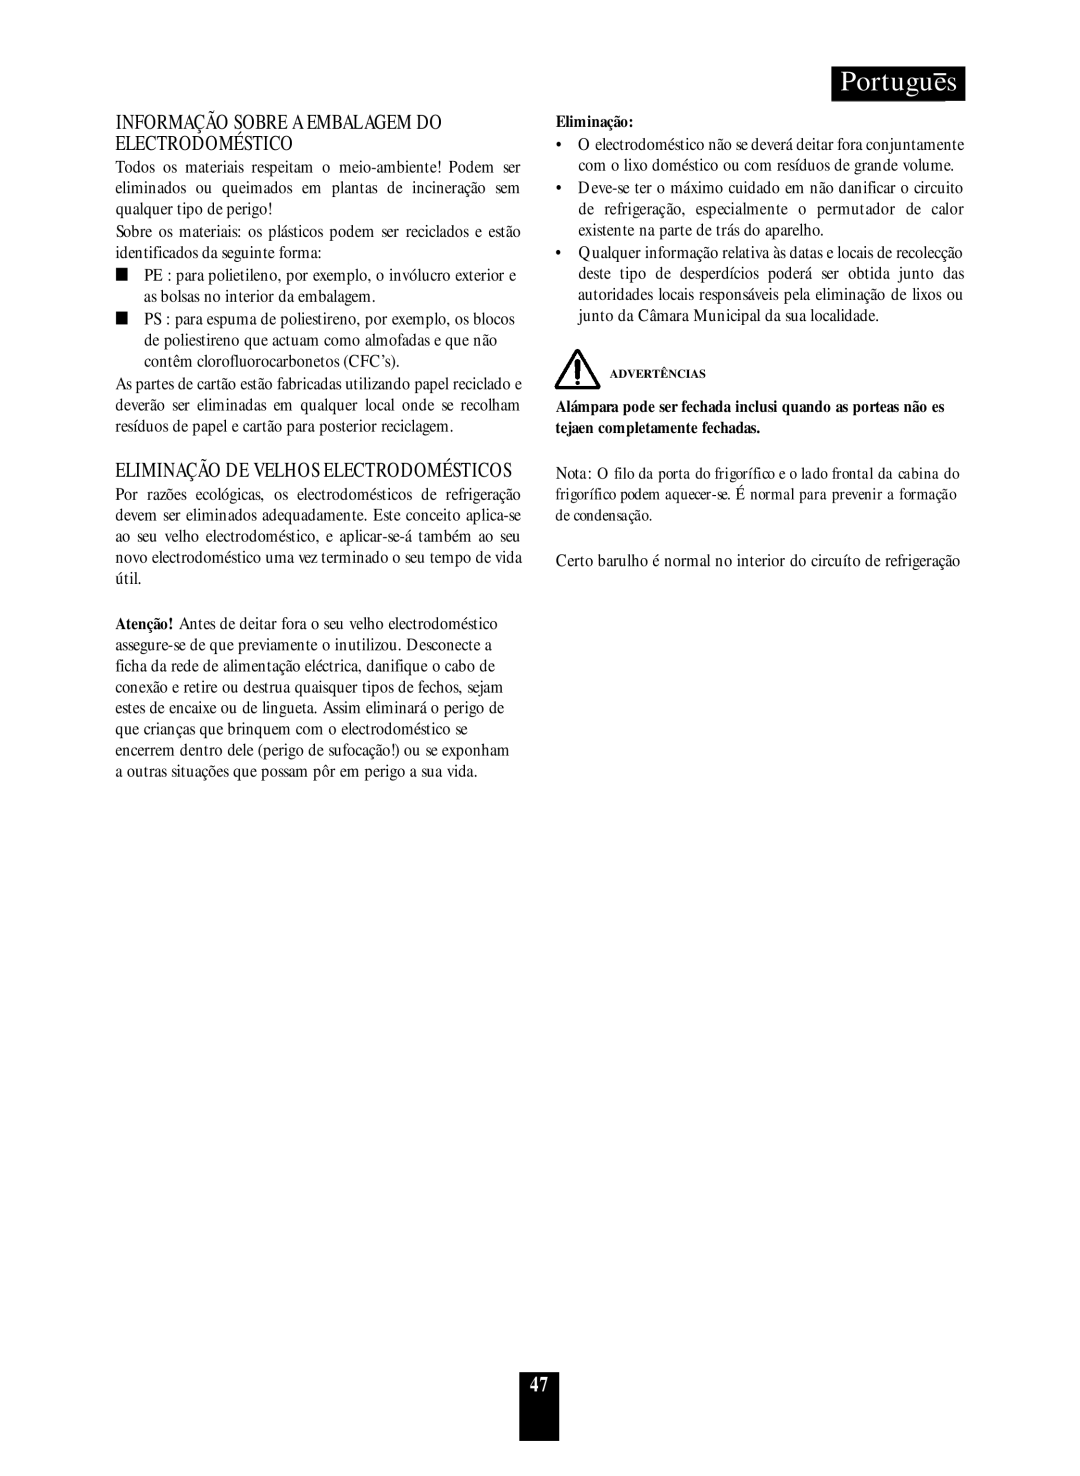 Daewoo RF-39.A manual Portugues, Informação Sobre A Embalagem Do Electrodoméstico, Eliminação De Velhos Electrodomésticos 